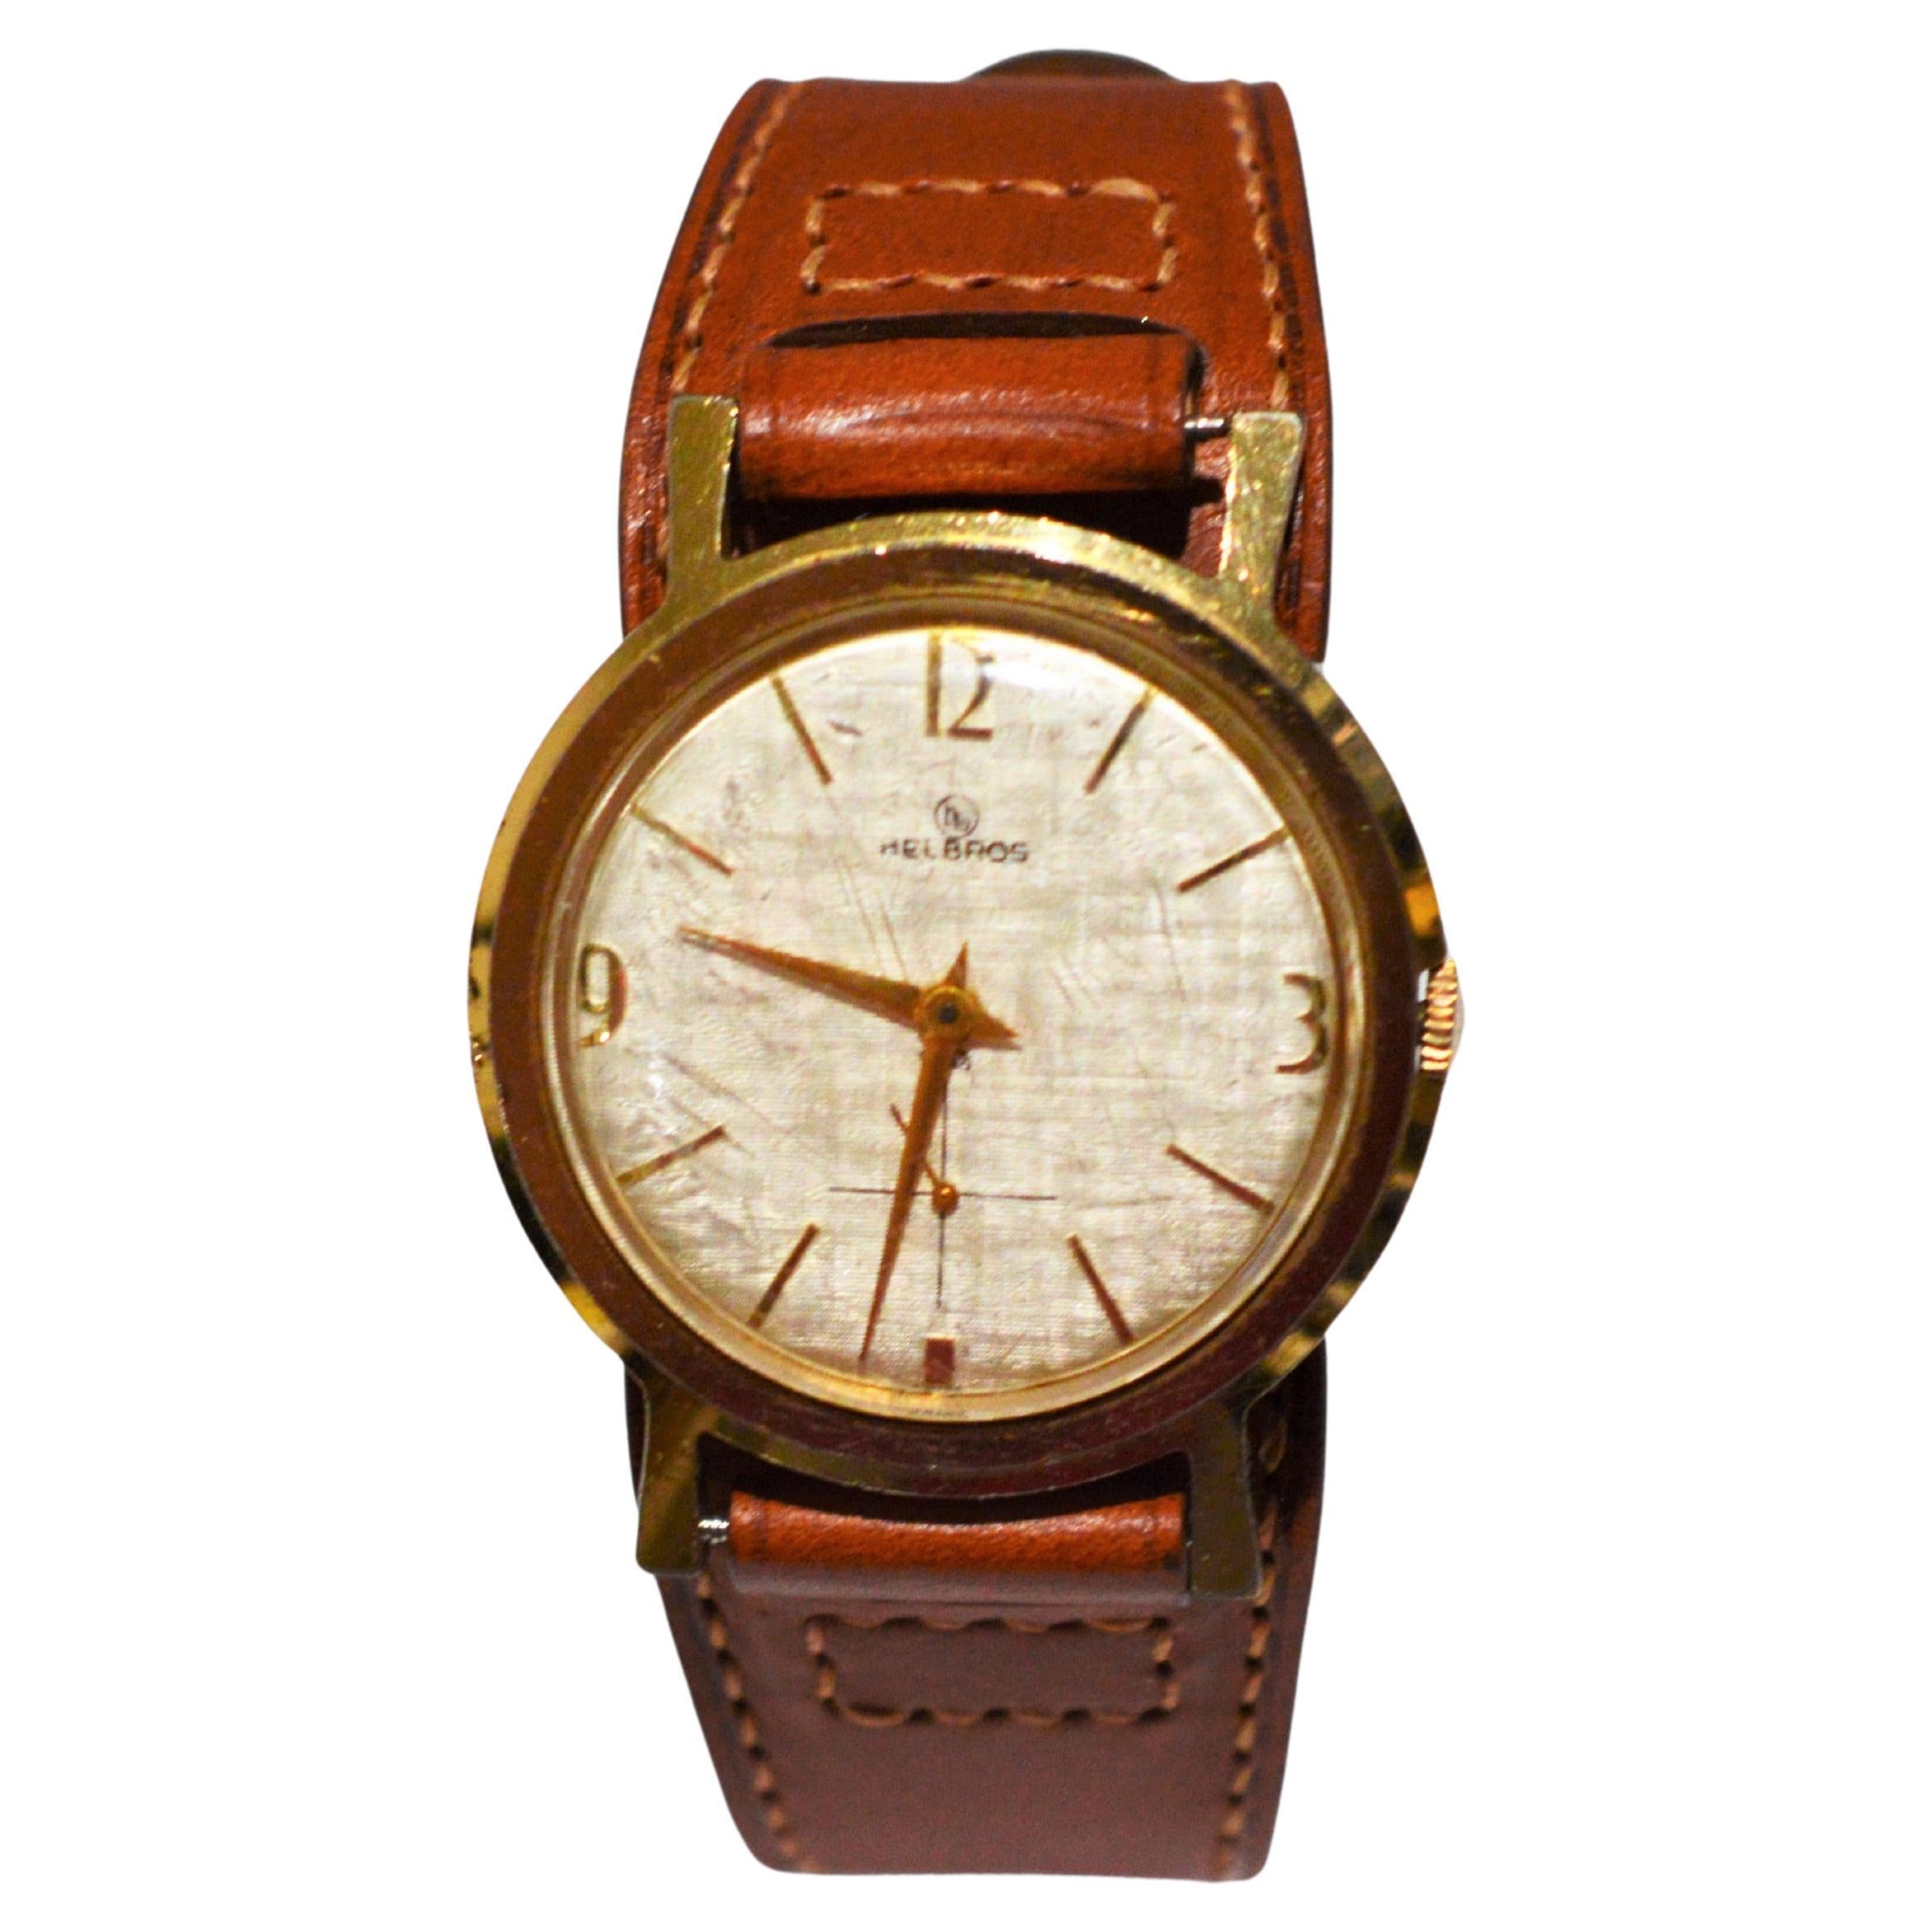 Helbros Model 83 Classic 1950s Wrist Watch w Military Style Bund Strap 